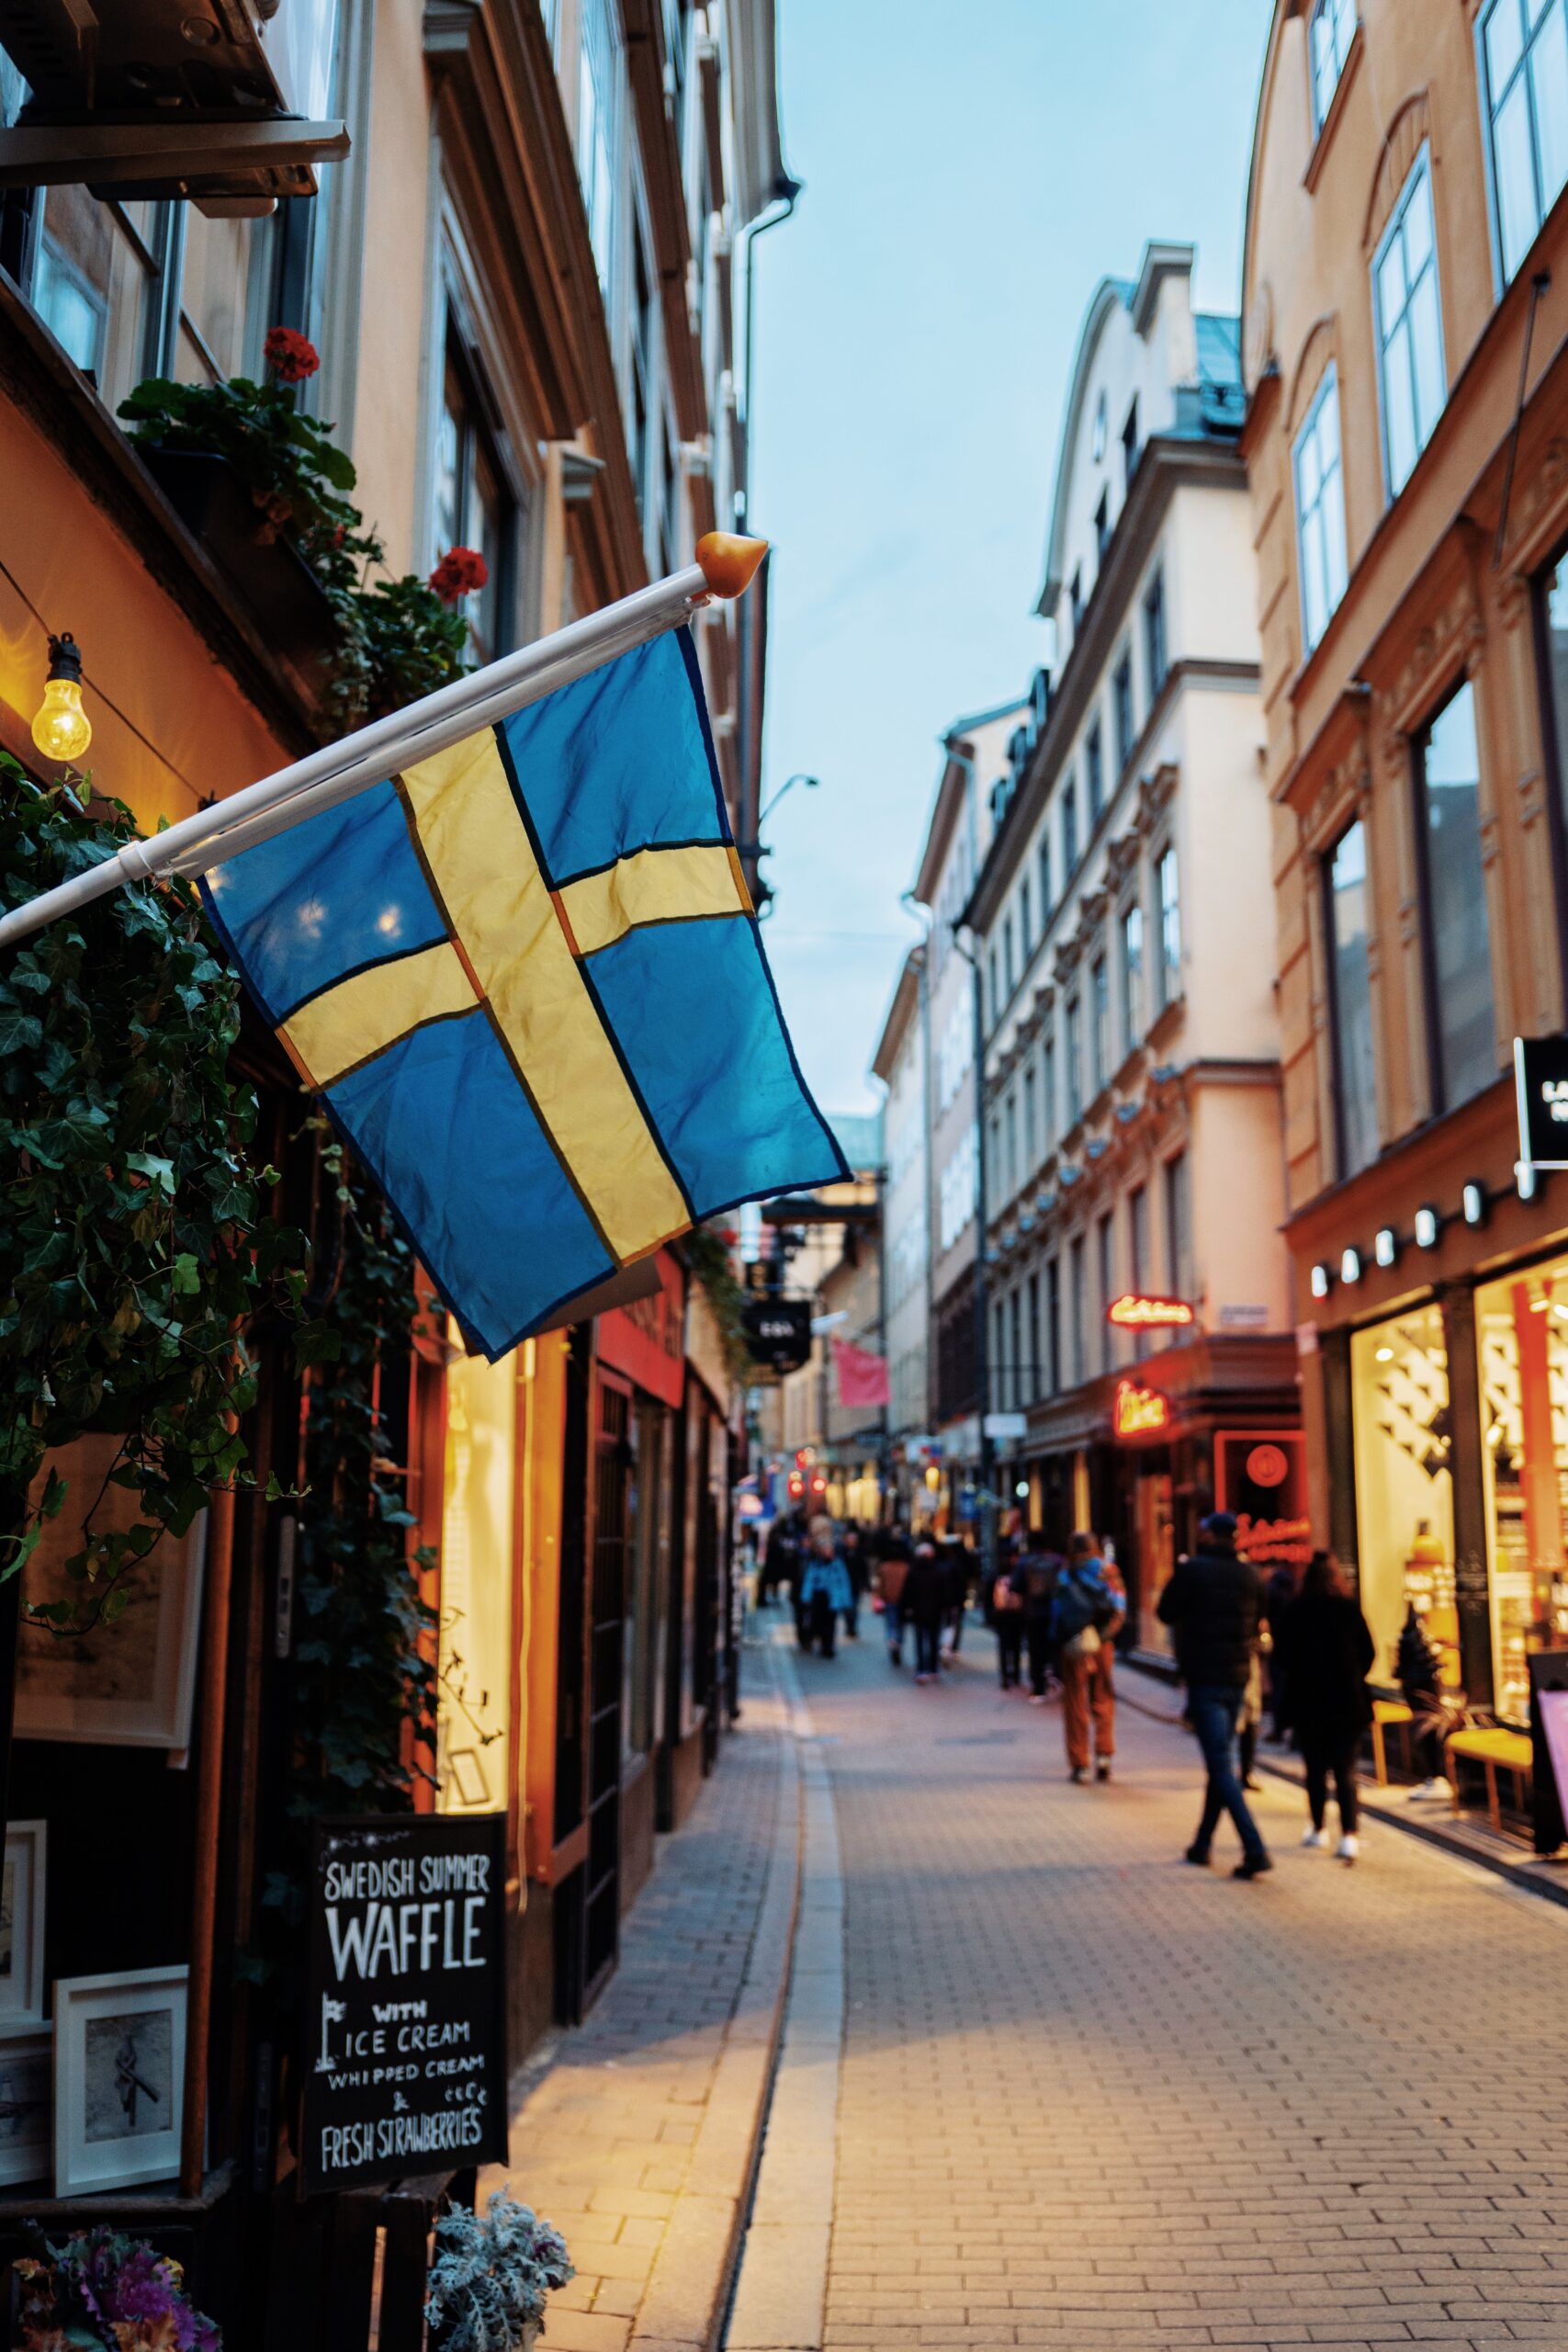 Szwecja i odwilż na froncie przybywających za pracą ❗️